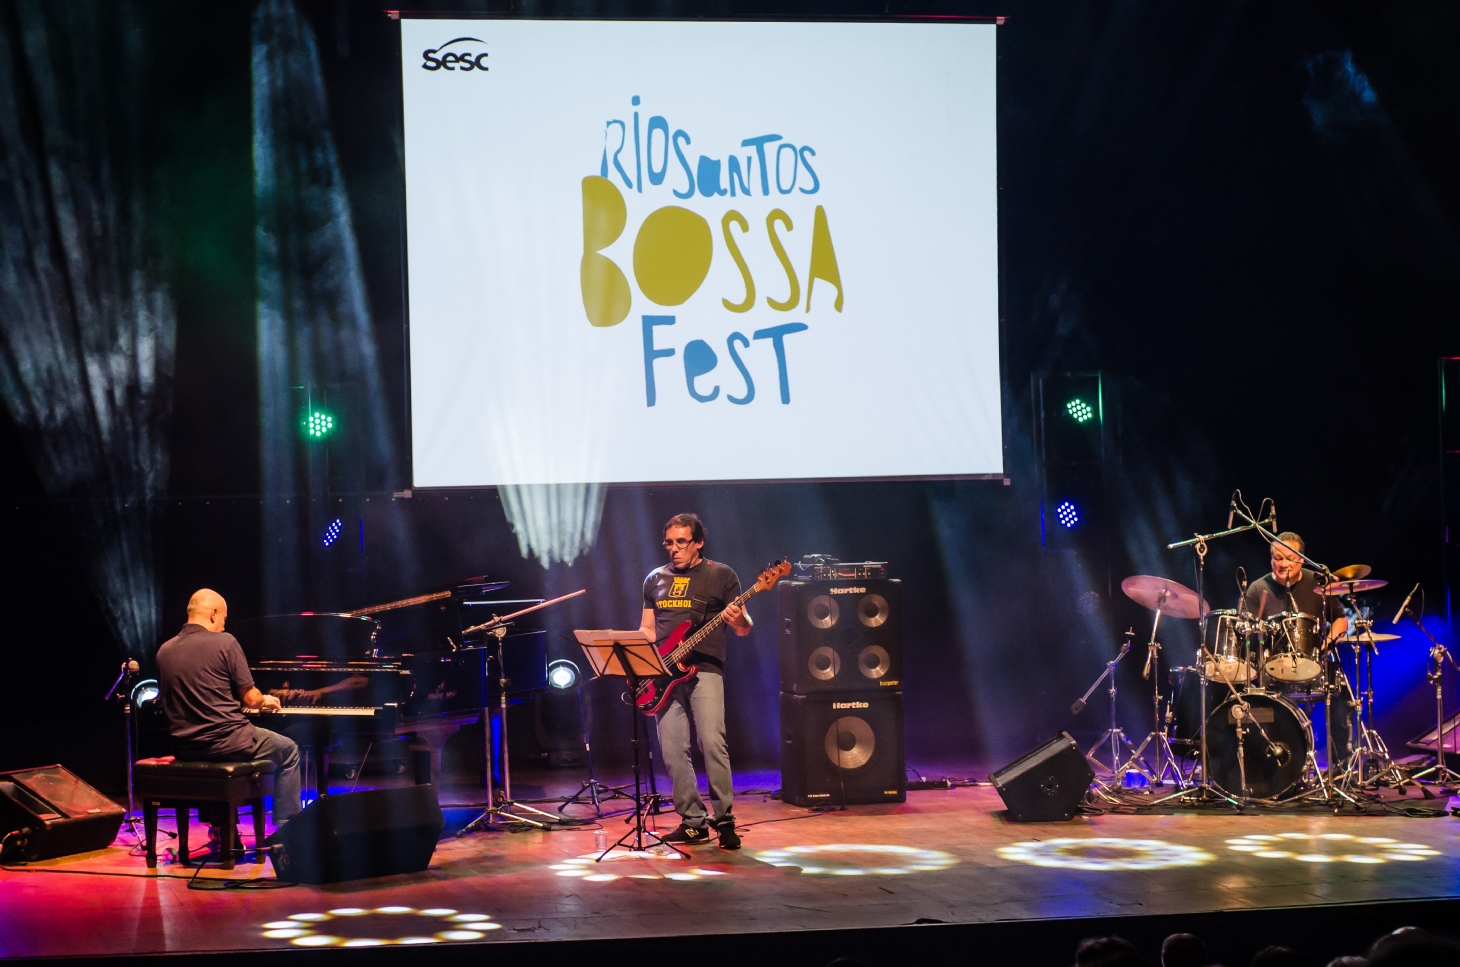 Rio Santos Bossa Fest tem extensa programação na Cidade | Jornal da Orla